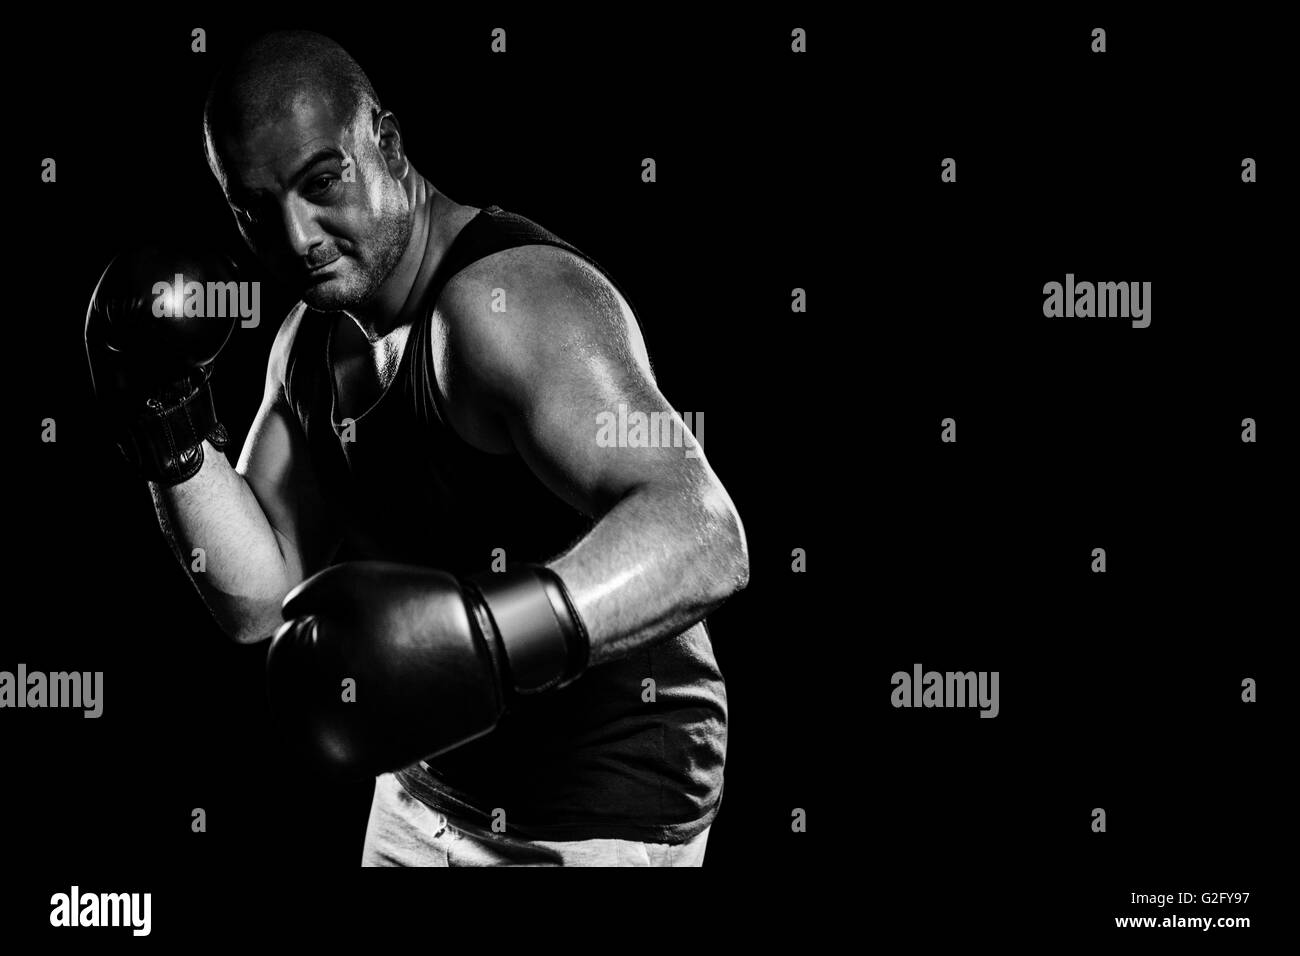 Imagen compuesta de boxeador realizar postura de boxeo Foto de stock